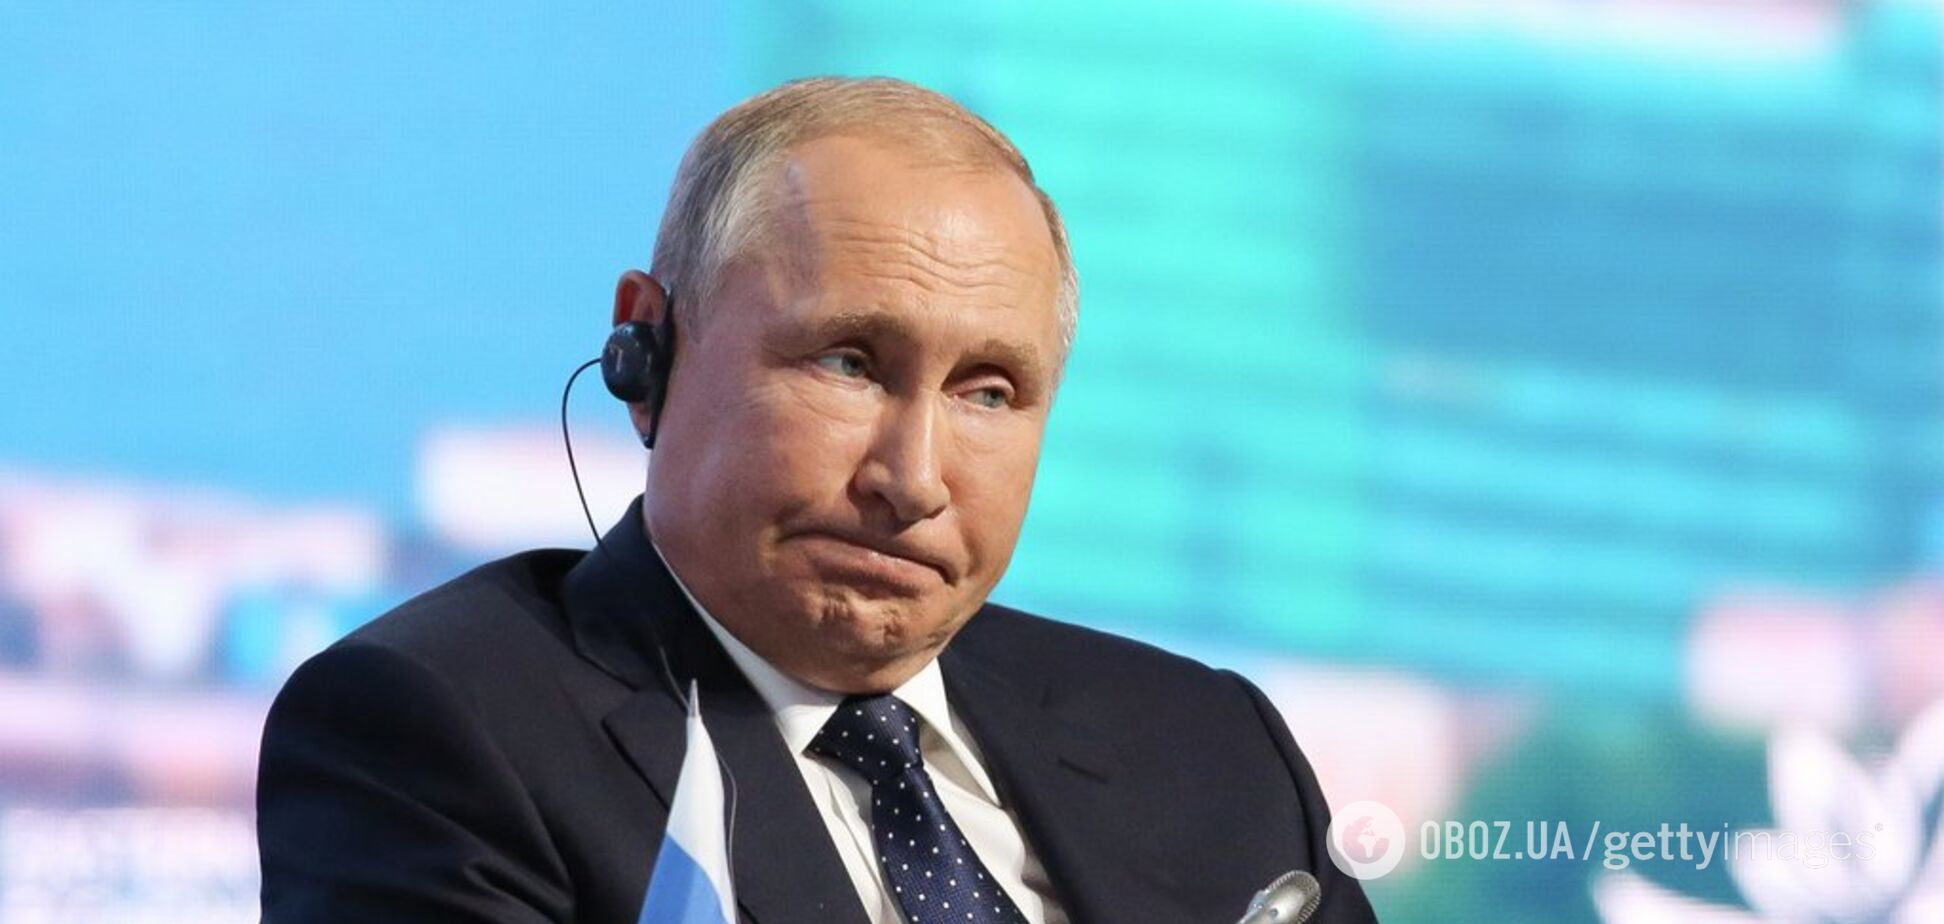 'Дідусь у маразмі': у мережі обурилися заявою Путіна щодо російської мови